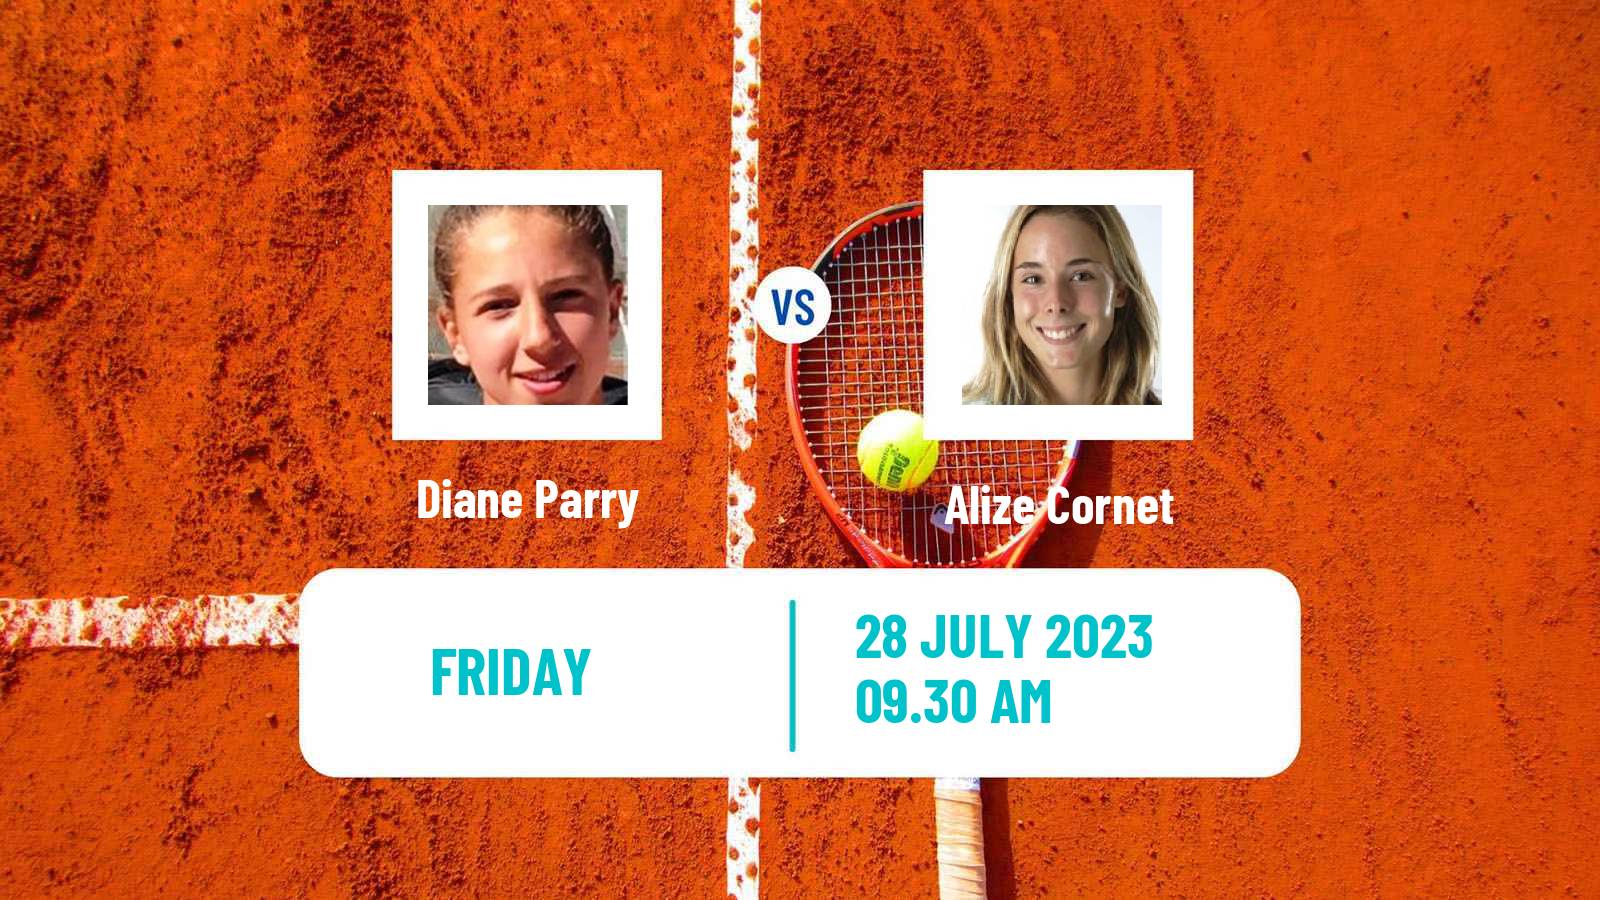 Tennis WTA Lausanne Diane Parry - Alize Cornet